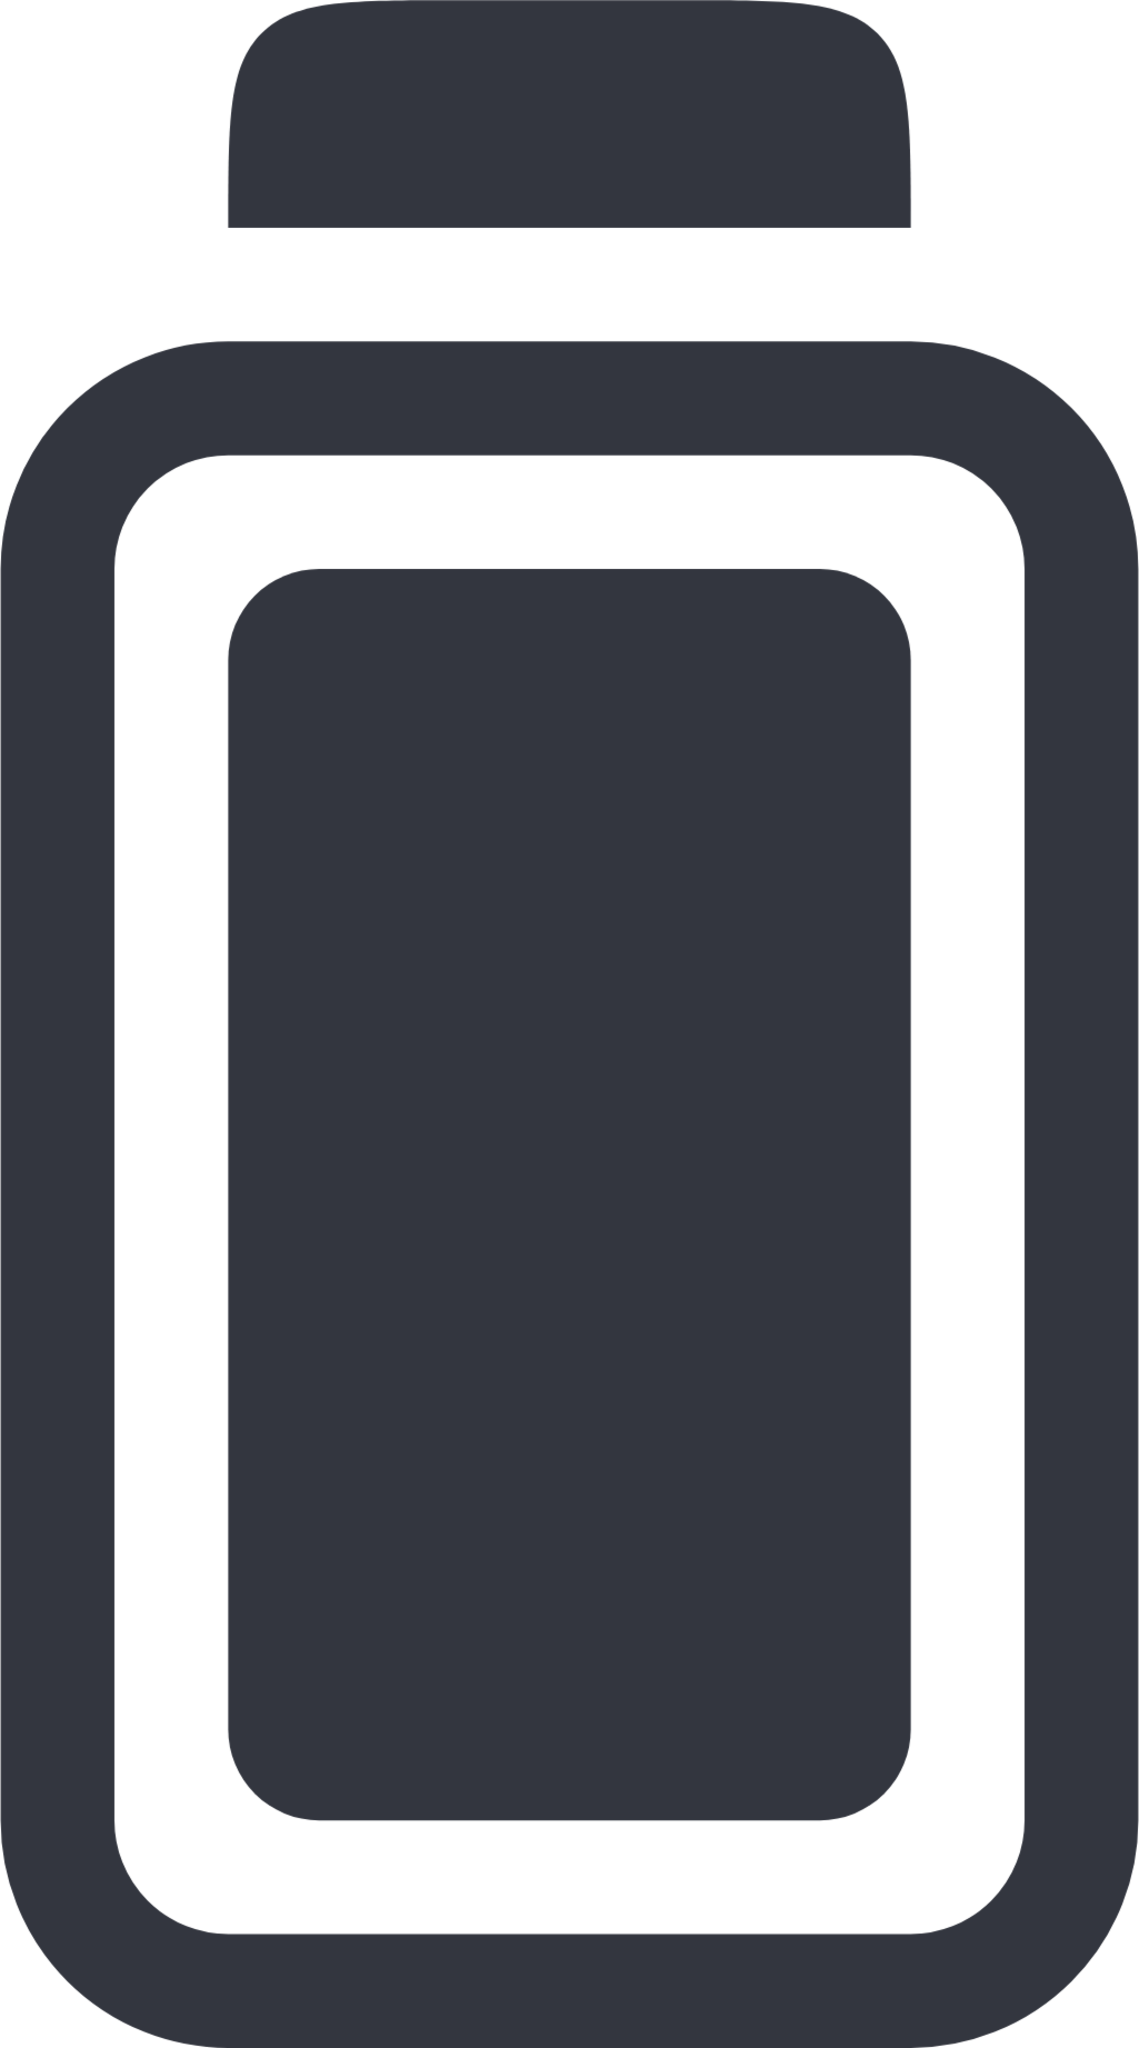 battery full light icon